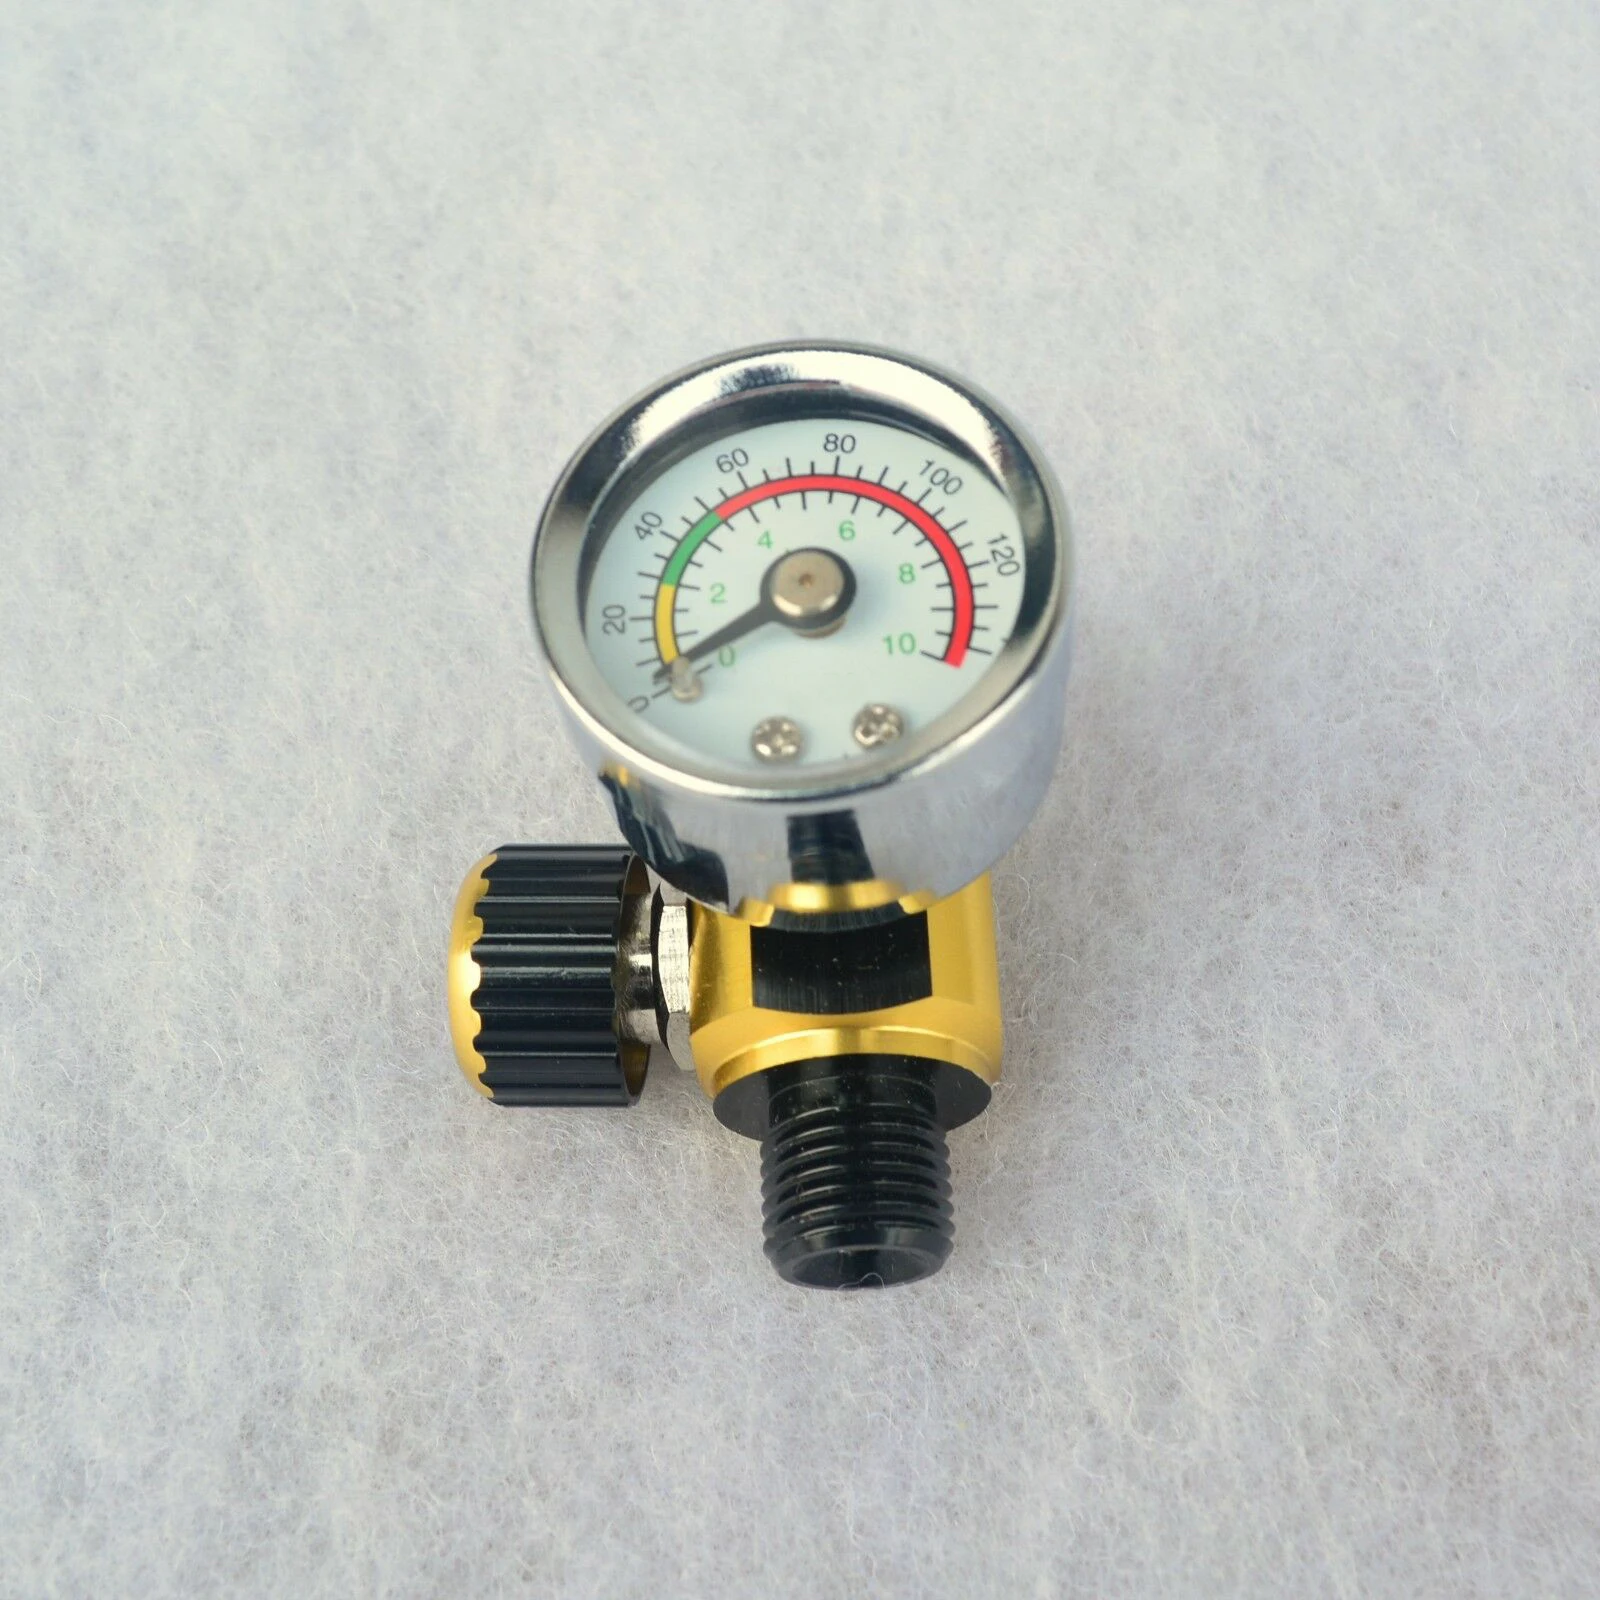 0-140 PSI регулятор давления воздуха компрессор манометр спрей краска контроль регулируемый